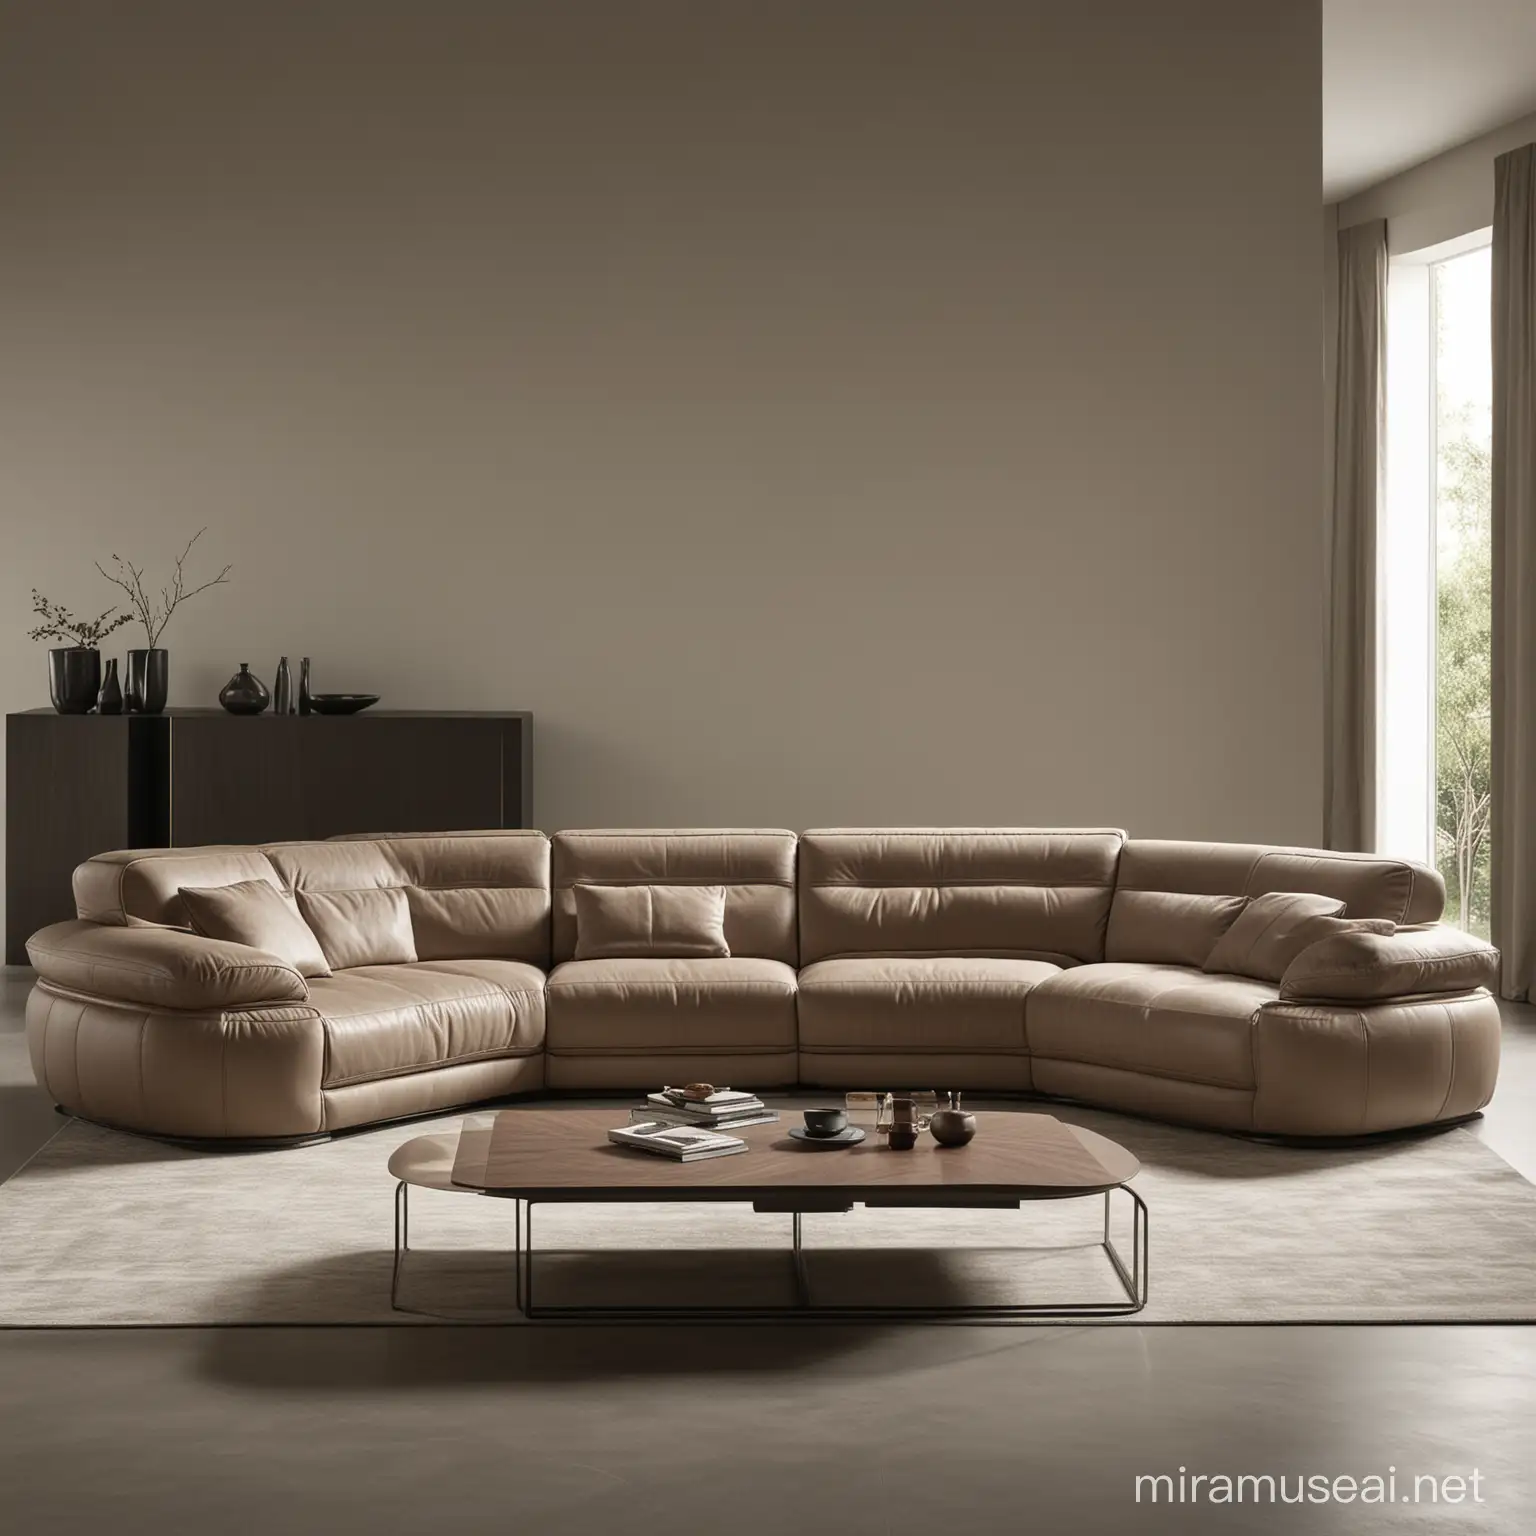 Luxury Sofa Design in Elegant Living Room Setting